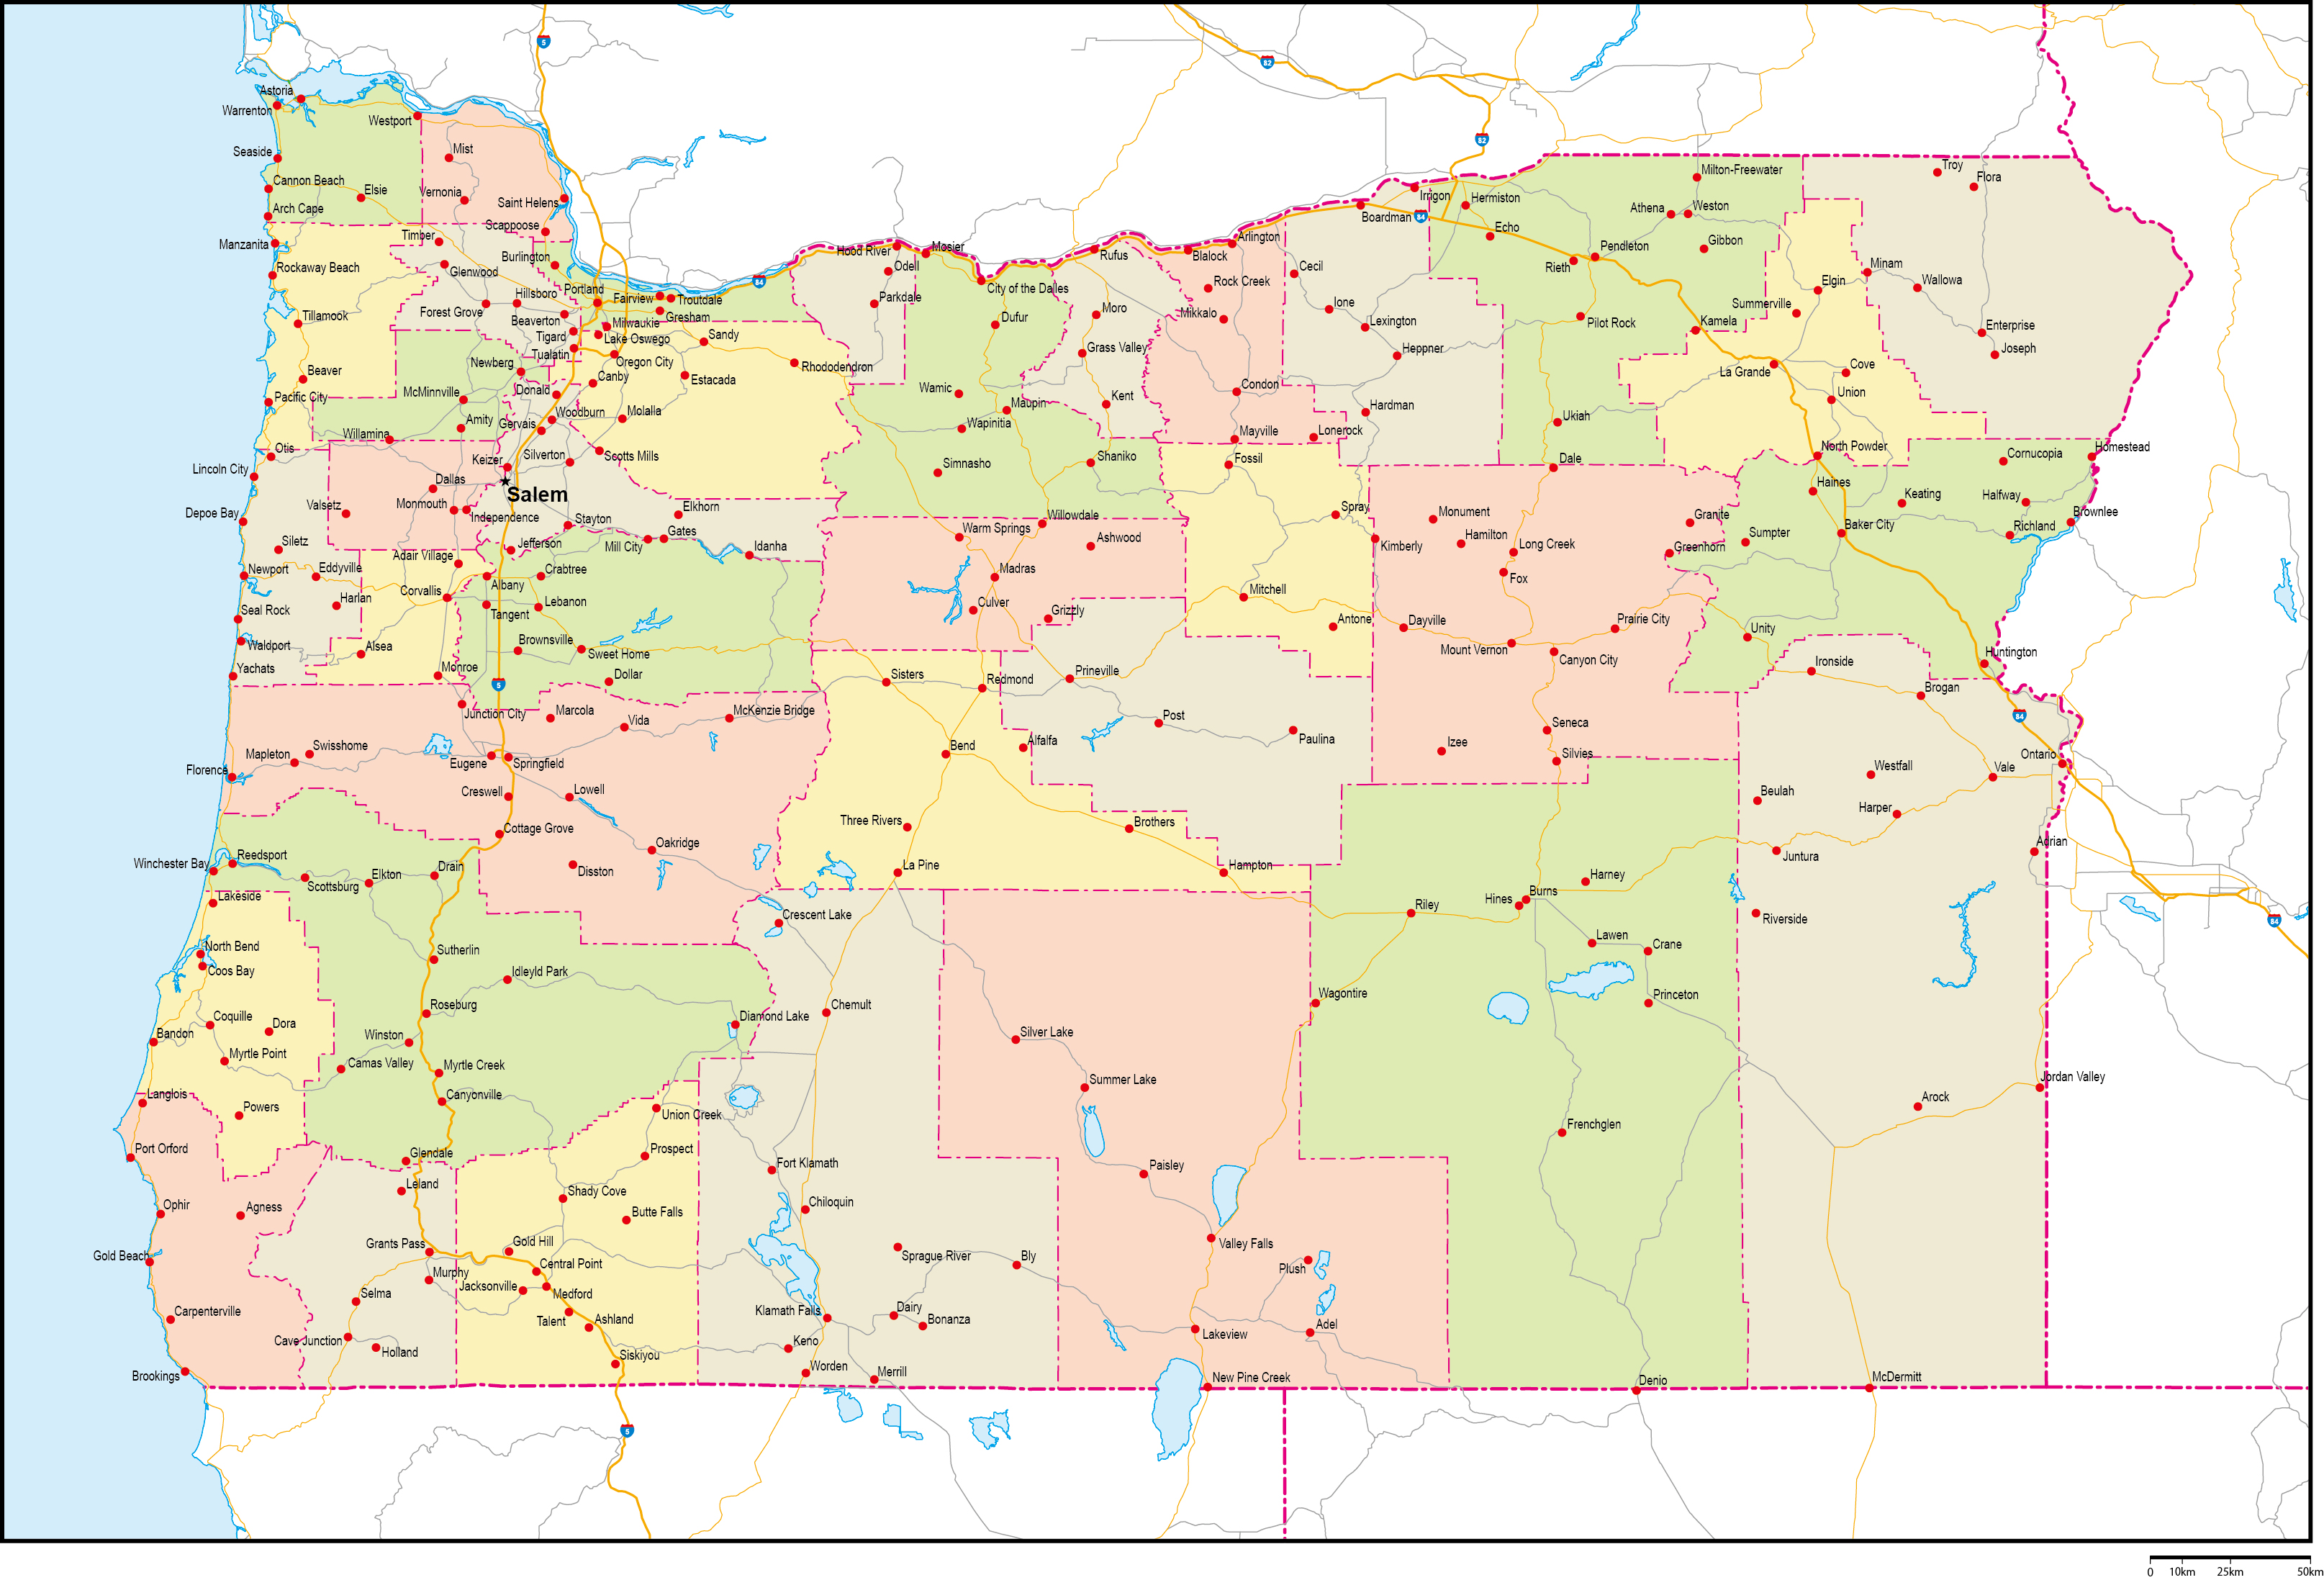 オレゴン州郡色分け地図州都・主な都市・道路あり(英語)フリーデータの画像